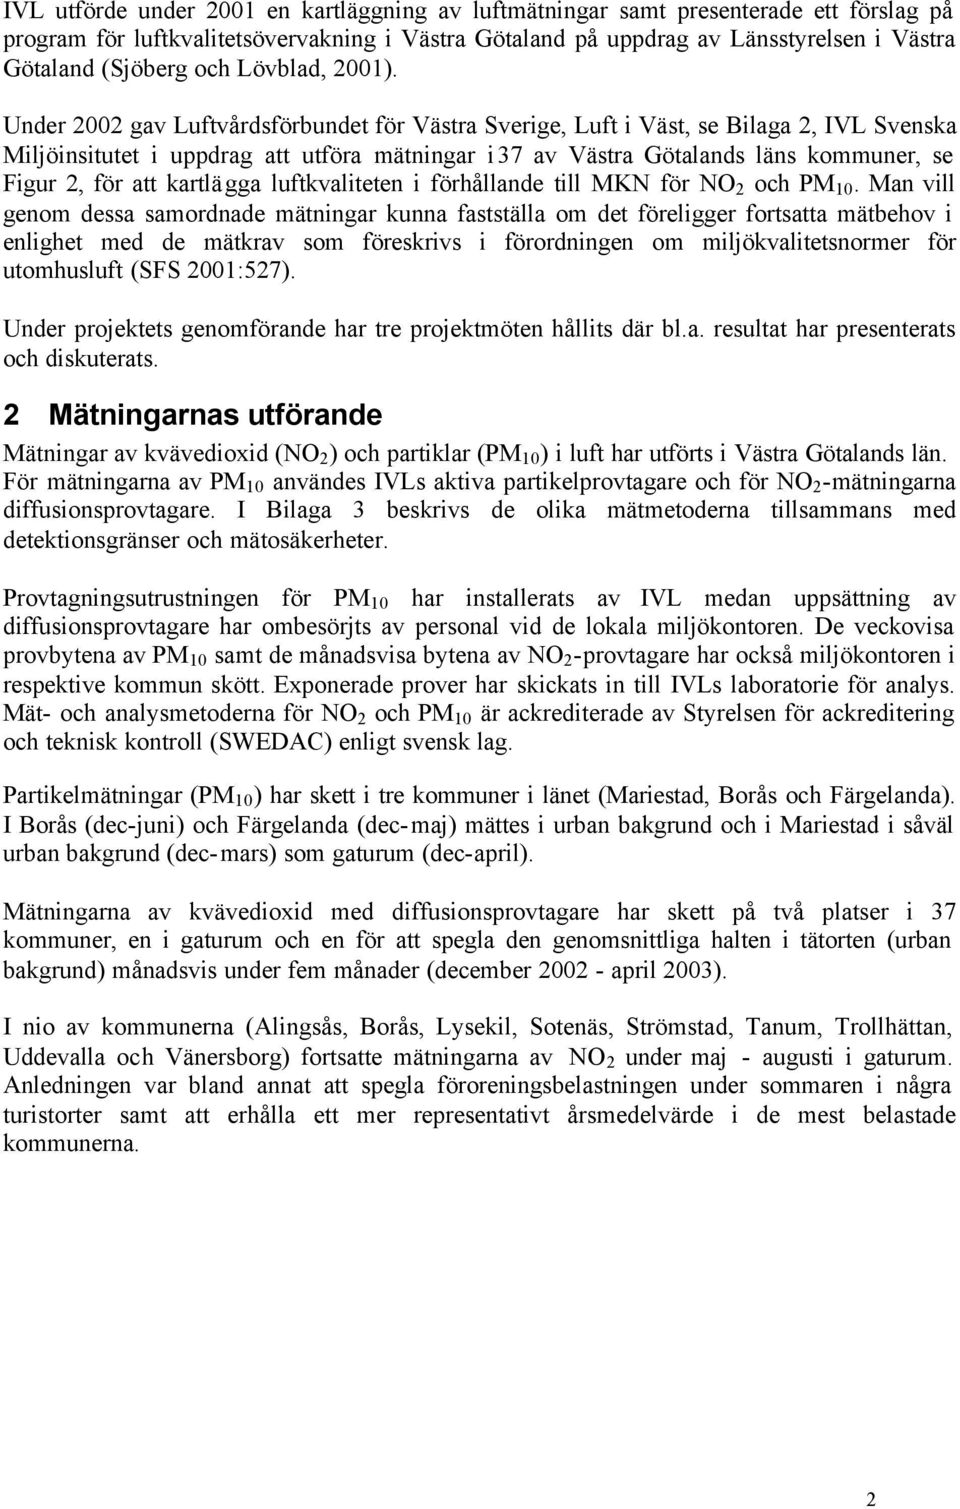 Under 2002 gav Luftvårdsförbundet för Västra Sverige, Luft i Väst, se Bilaga 2, IVL Svenska Miljöinsitutet i uppdrag att utföra mätningar i37 av Västra Götalands läns kommuner, se Figur 2, för att